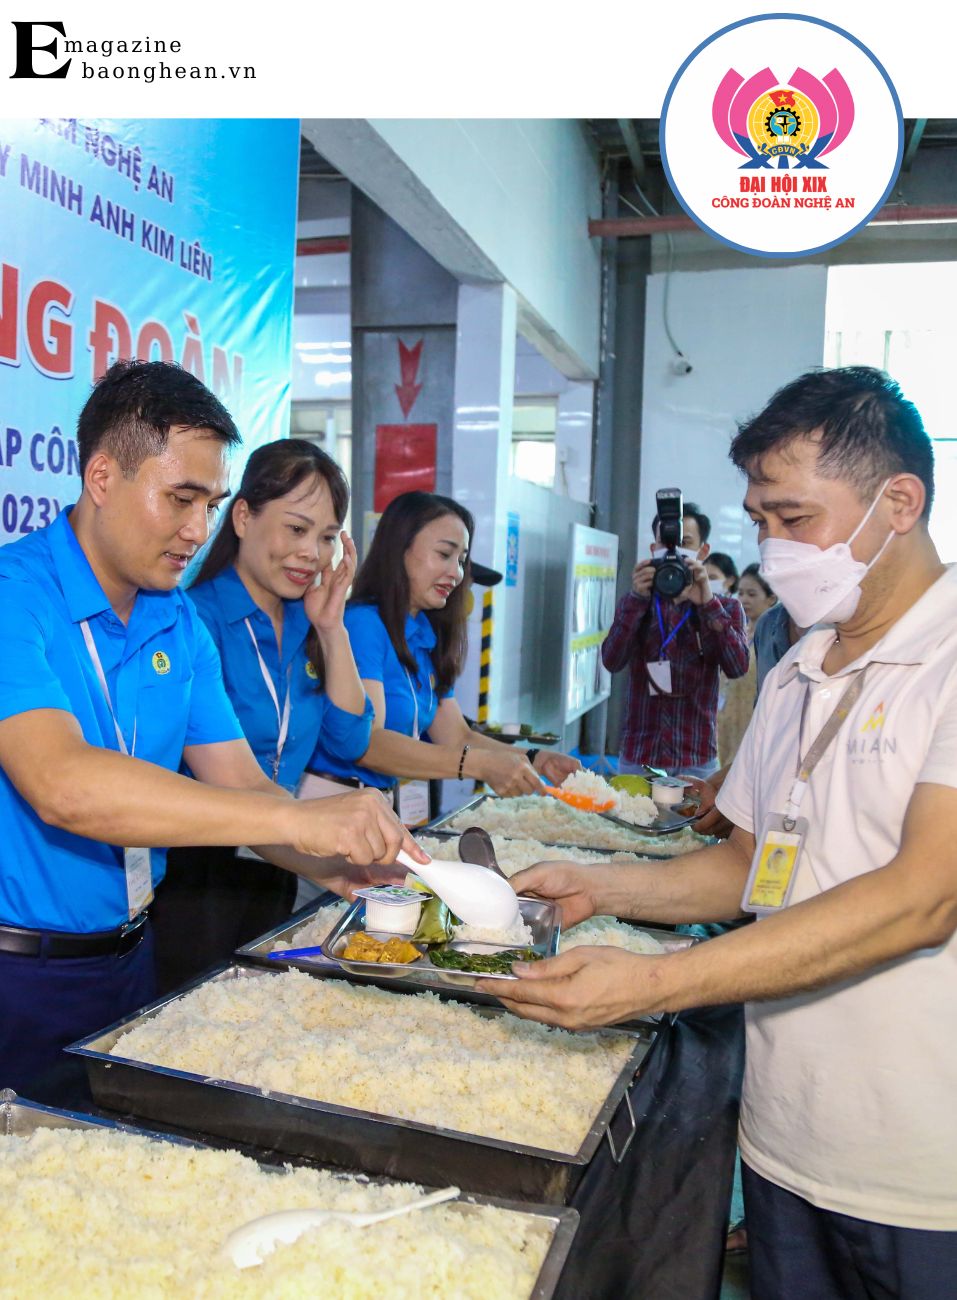 Đồng chí Thái Minh Sỹ - Phó Chủ tịch Liên đoàn Lao động tỉnh Nghệ An cùng công đoàn Khu Kinh tế Đông Nam tổ chức bữa cơm công đoàn cho người lao động. Ảnh: Thanh Quỳnh